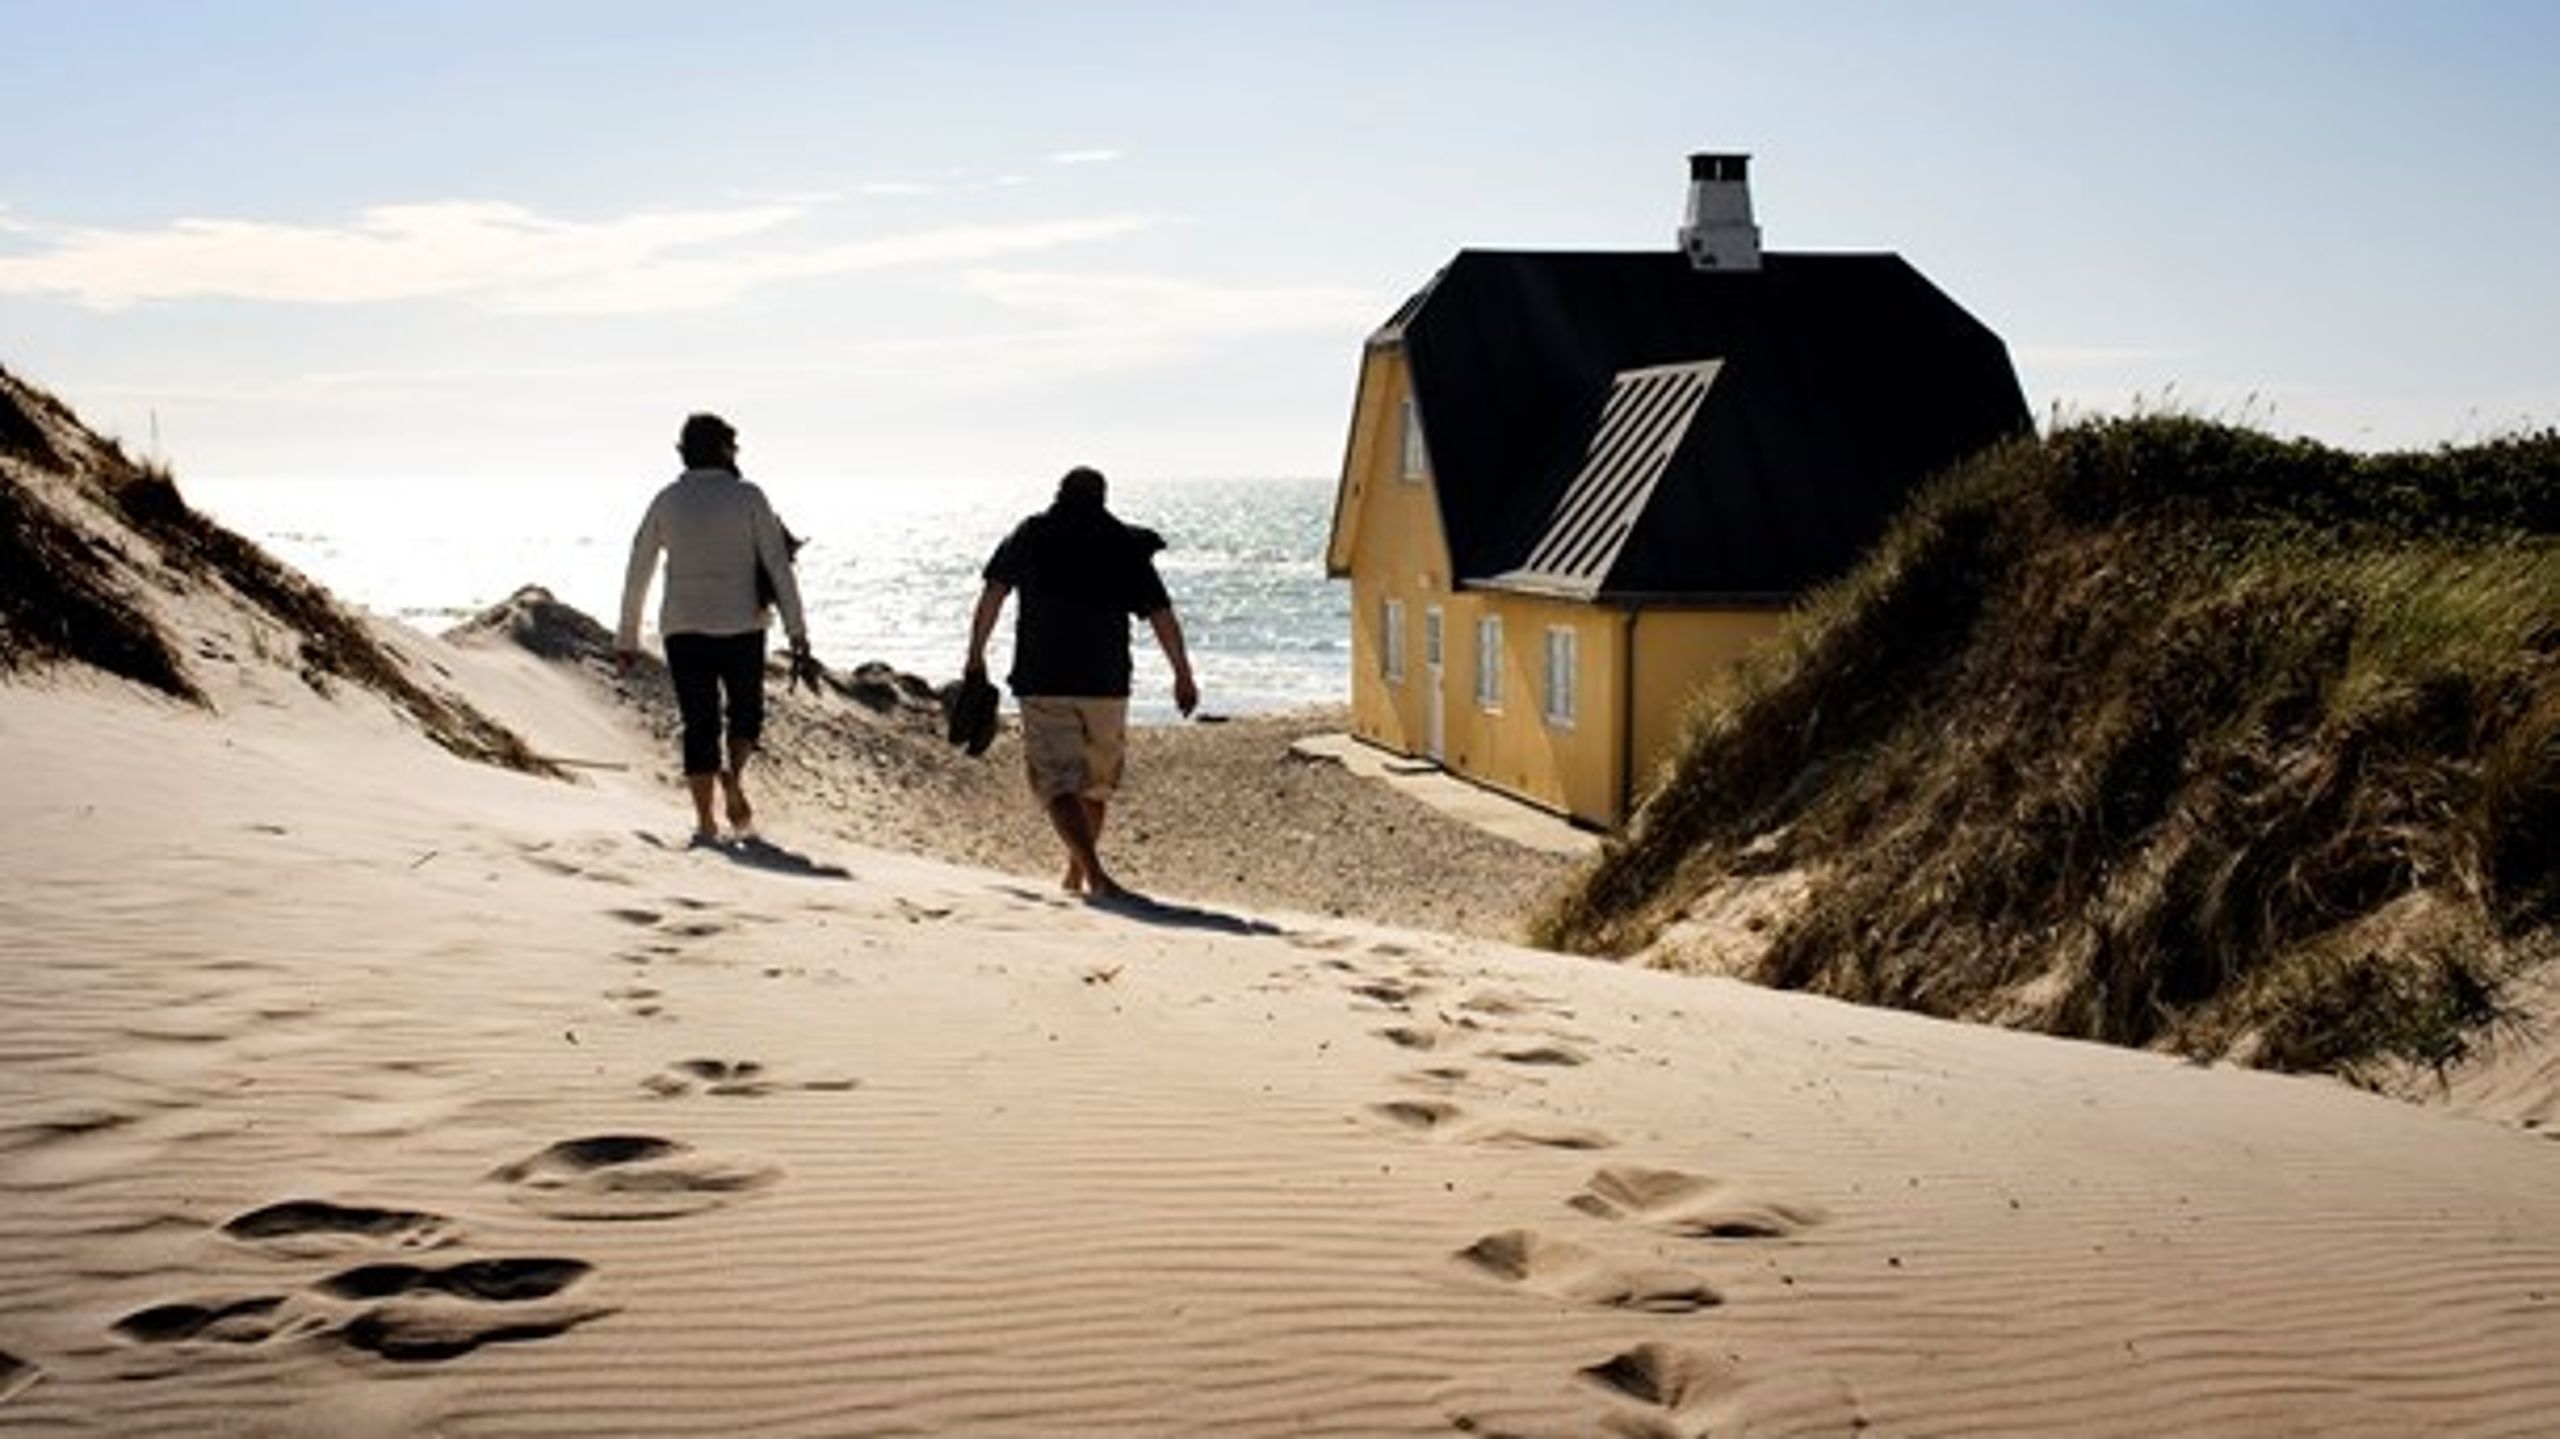 Sommerhuse med havkig kan blive interessante for dem, der bor i pendlerafstand af "sommerhusbyerne", skriver Poul H. Hvidbjerg.